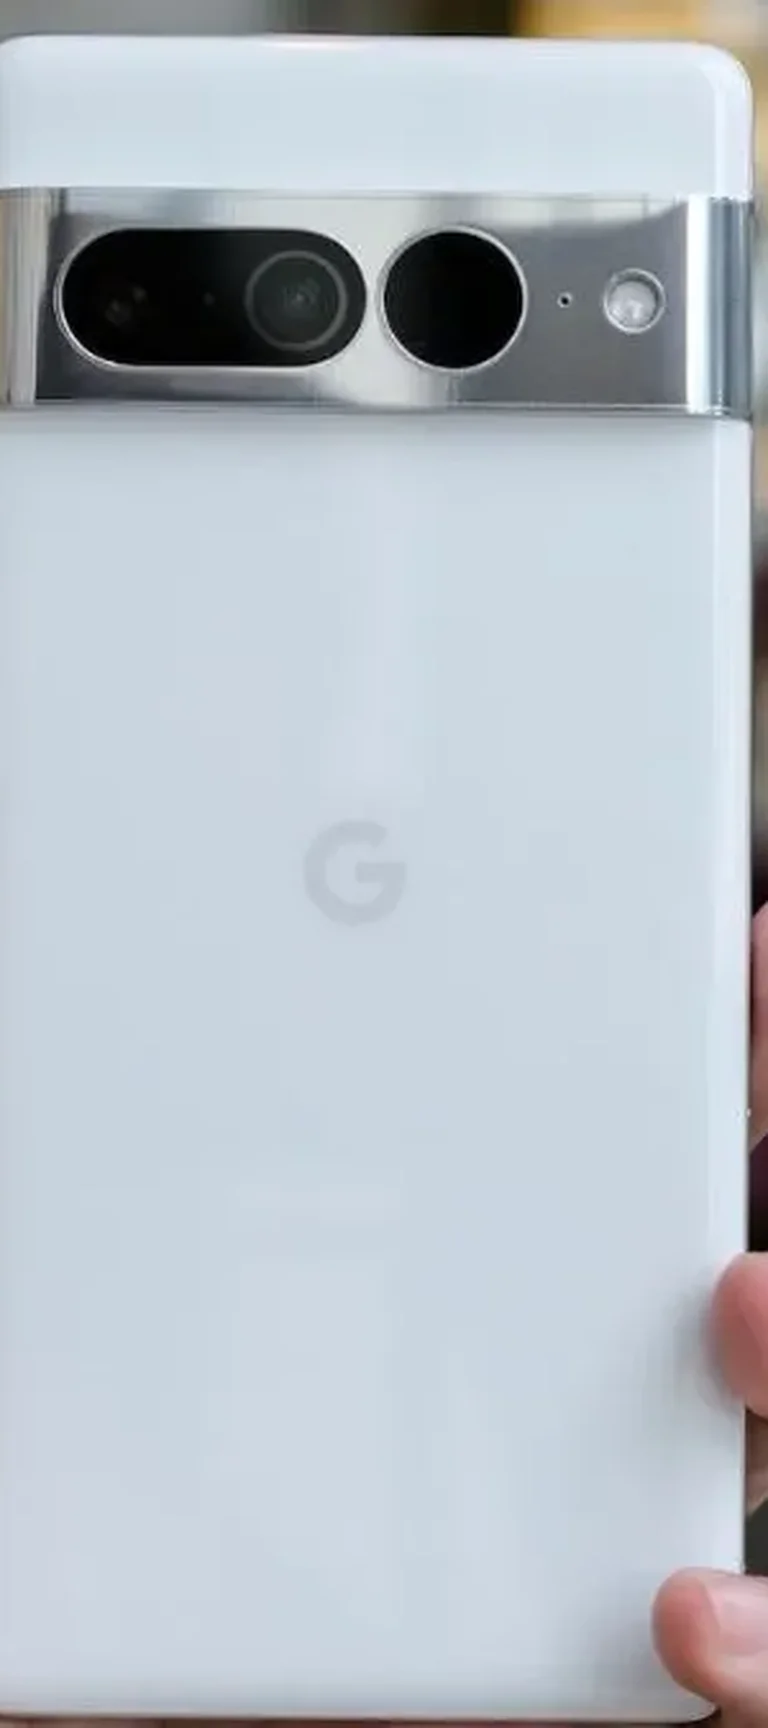 Google Pixel 8: Filtraciones y especificaciones reveladas antes de su  lanzamiento - Tecnocat